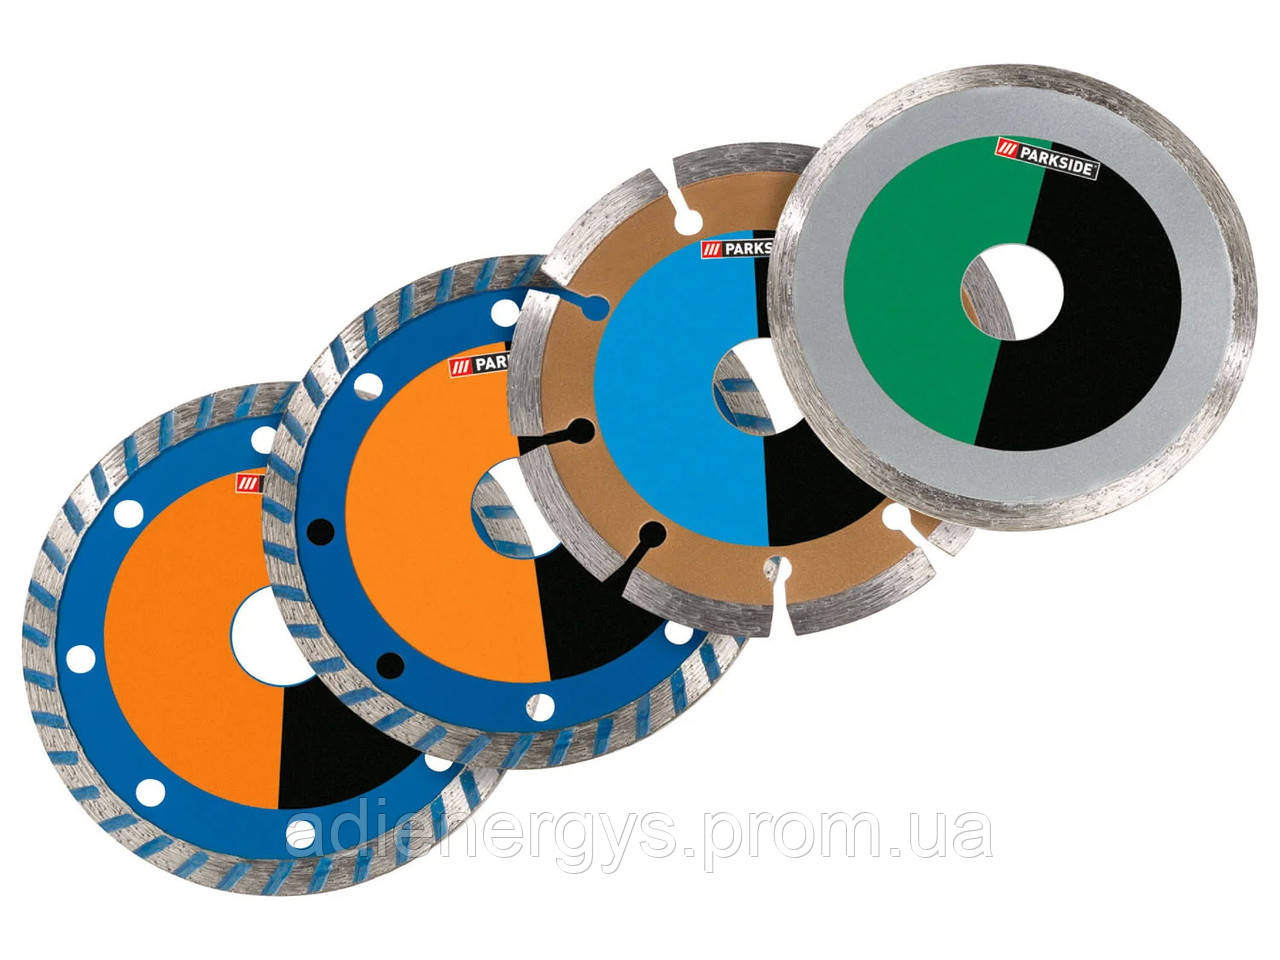 Набір алмазних дисків Parkside 4шт., ø110-125мм для болгарок кутових шліфувальних машин, Німеччина